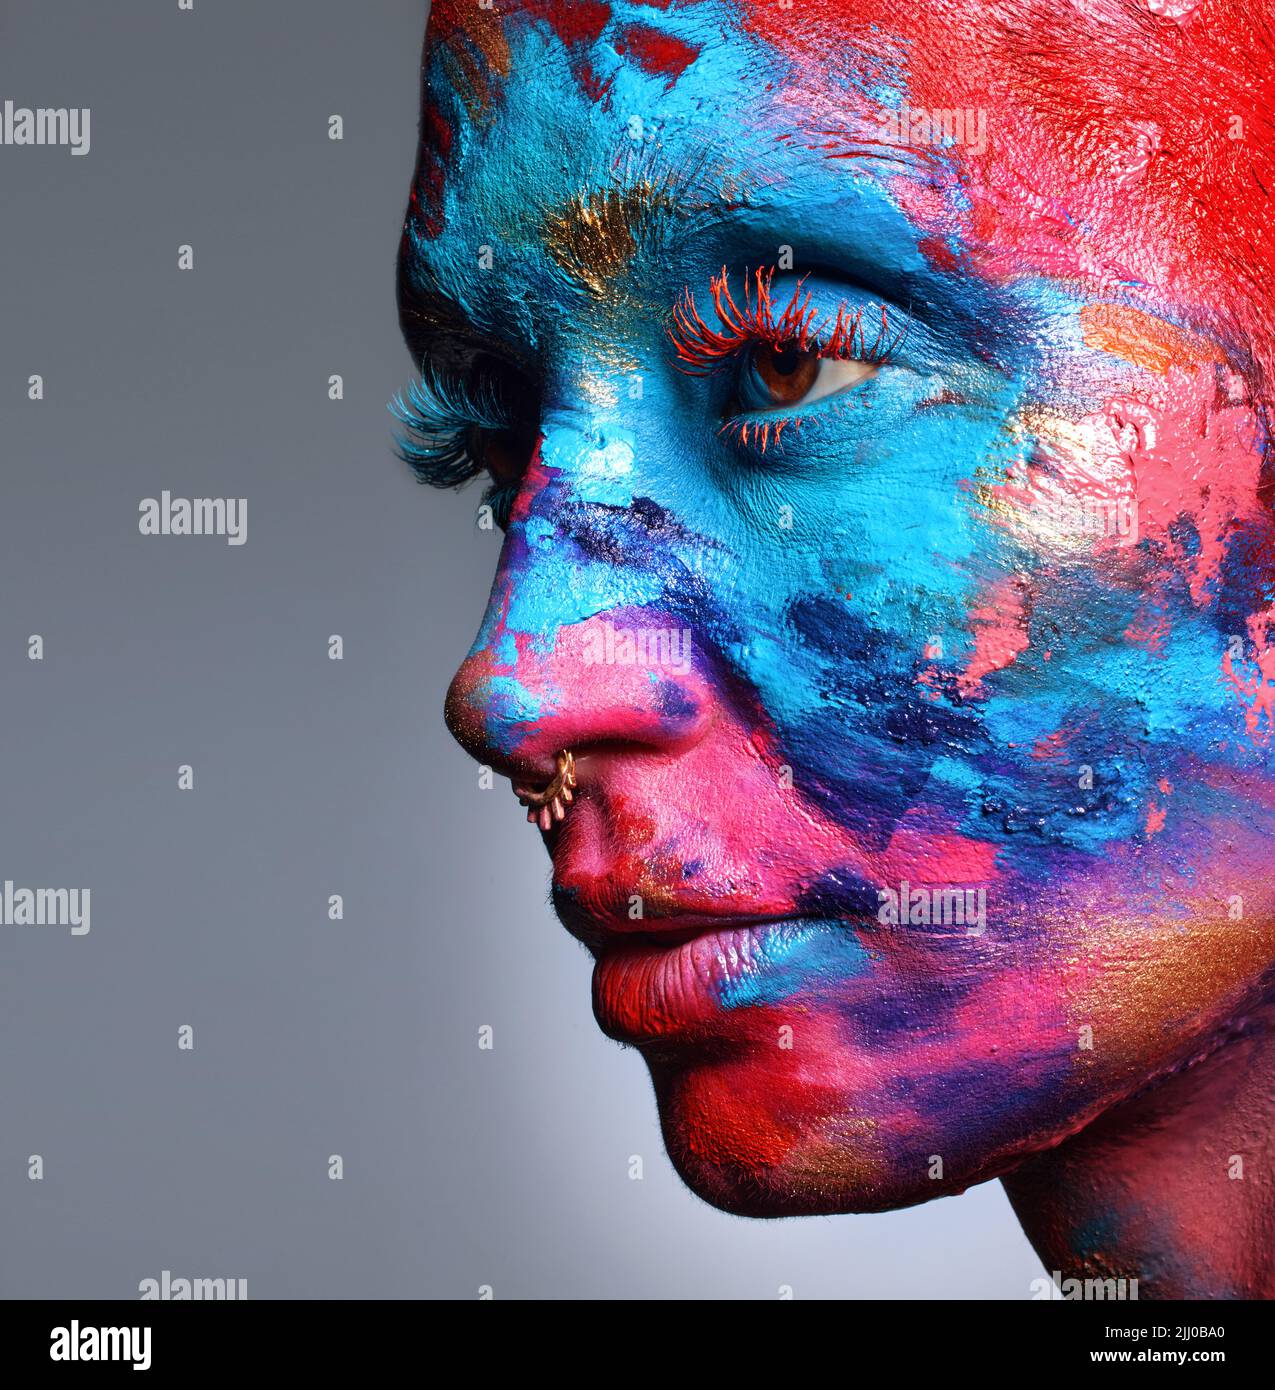 Kunst ist das, was man sieht und fühlt. Eine attraktive junge Frau posiert allein im Studio mit Farbe auf ihrem Gesicht. Stockfoto